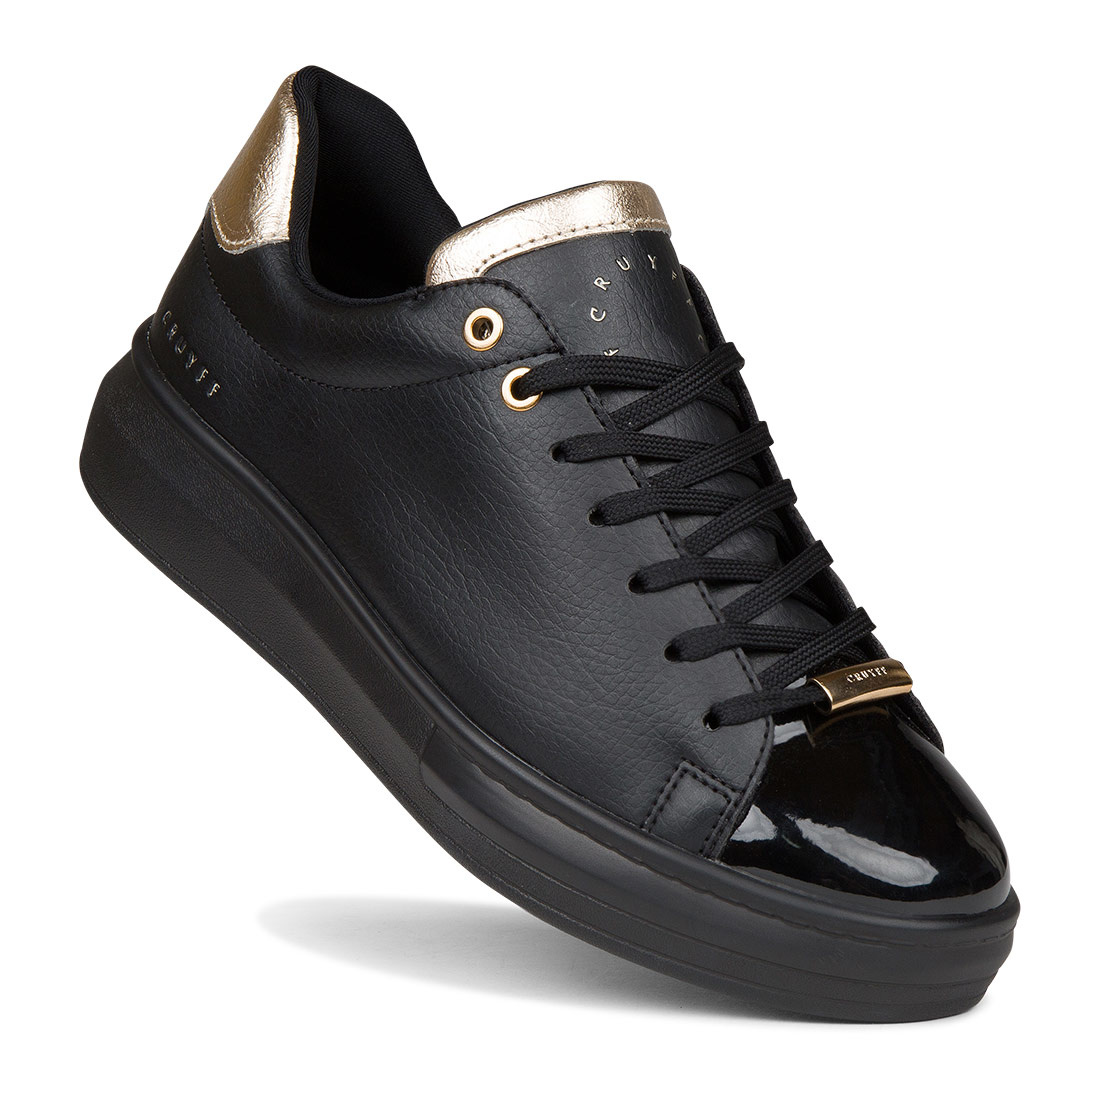 Blijkbaar Snel uitvinding Cruyff Pace zwart goud sneakers dames (CC213045960) - outletsportschoenen.nl